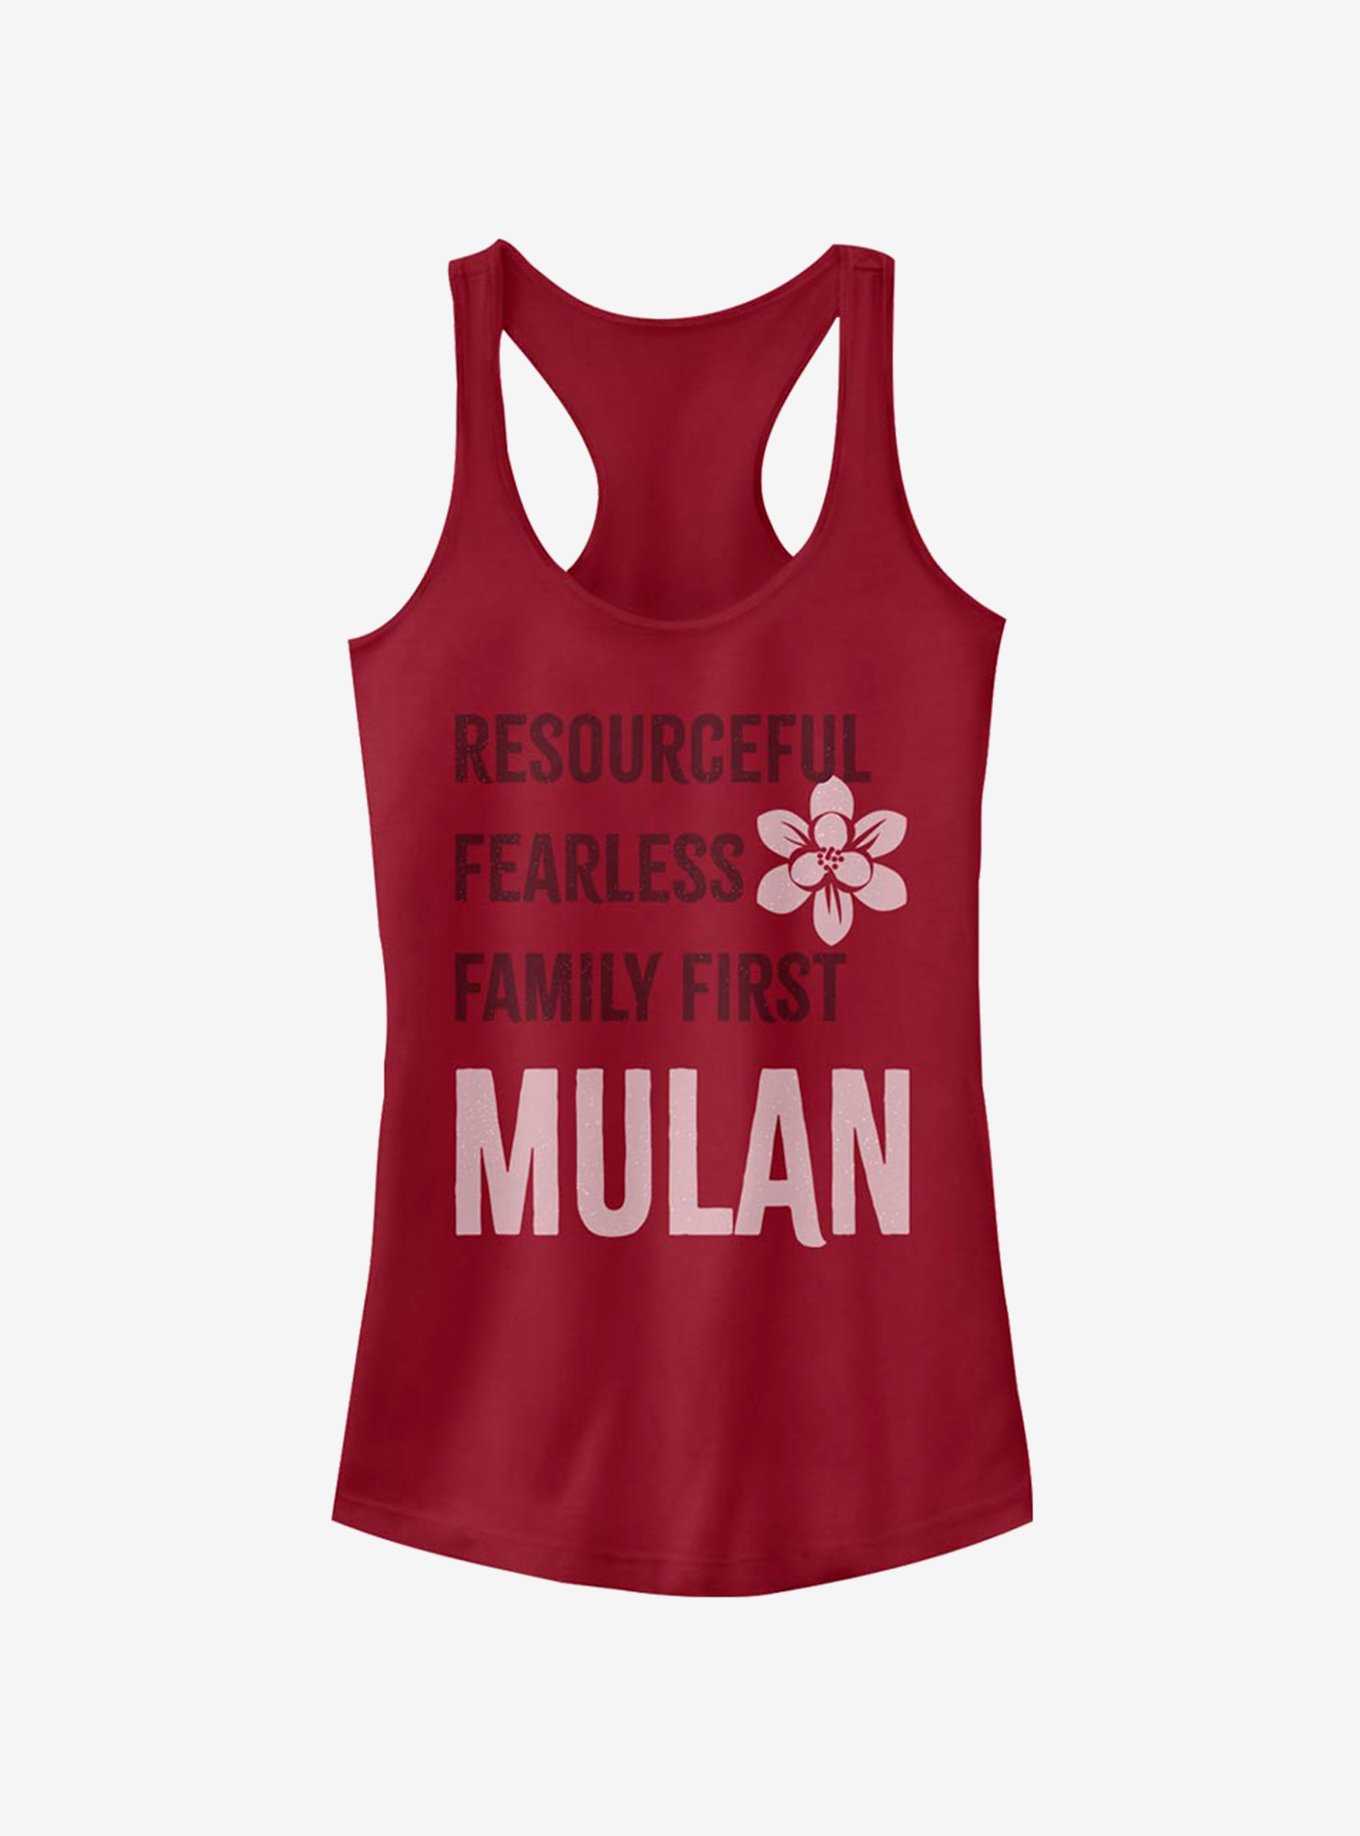 Disney Mulan List Mulan Girls Tank, , hi-res